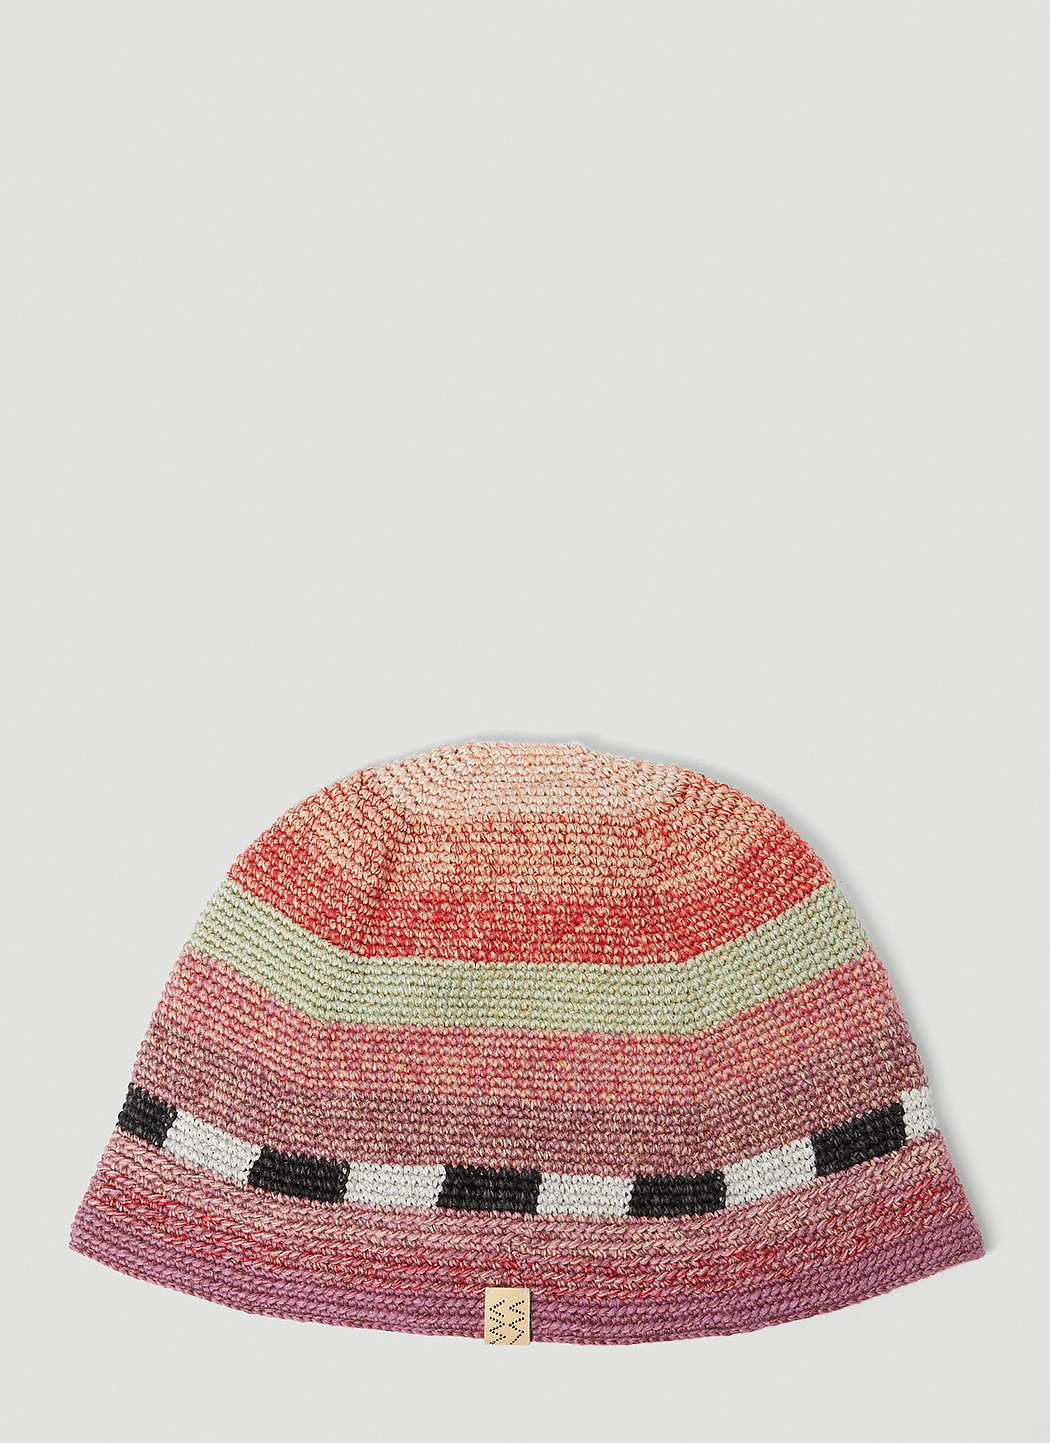 Meda Crochet Hat